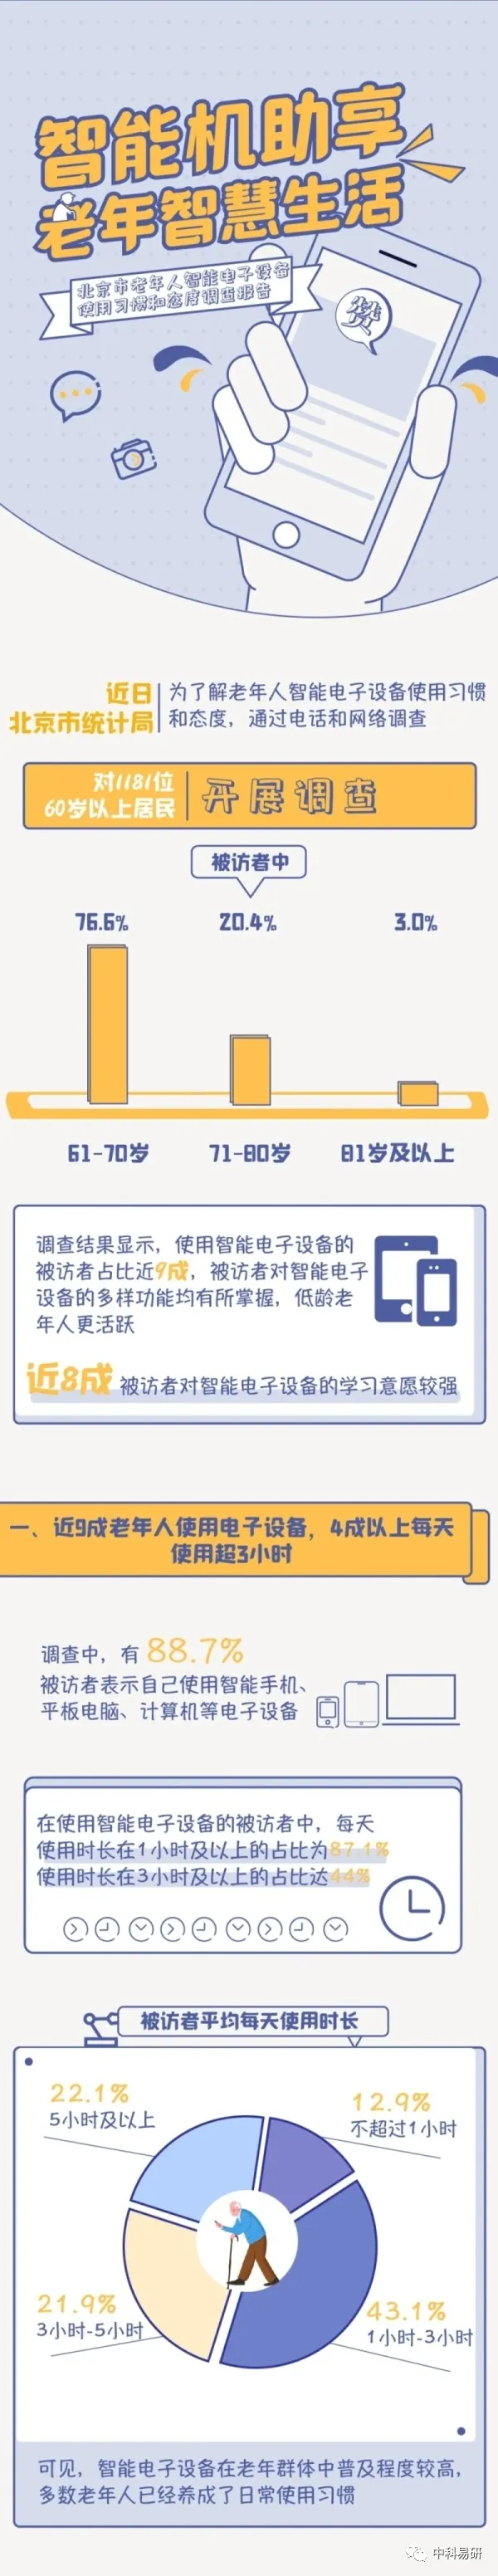 中科易研｜北京市老年人智能电子设备使用习惯和态度调查报告